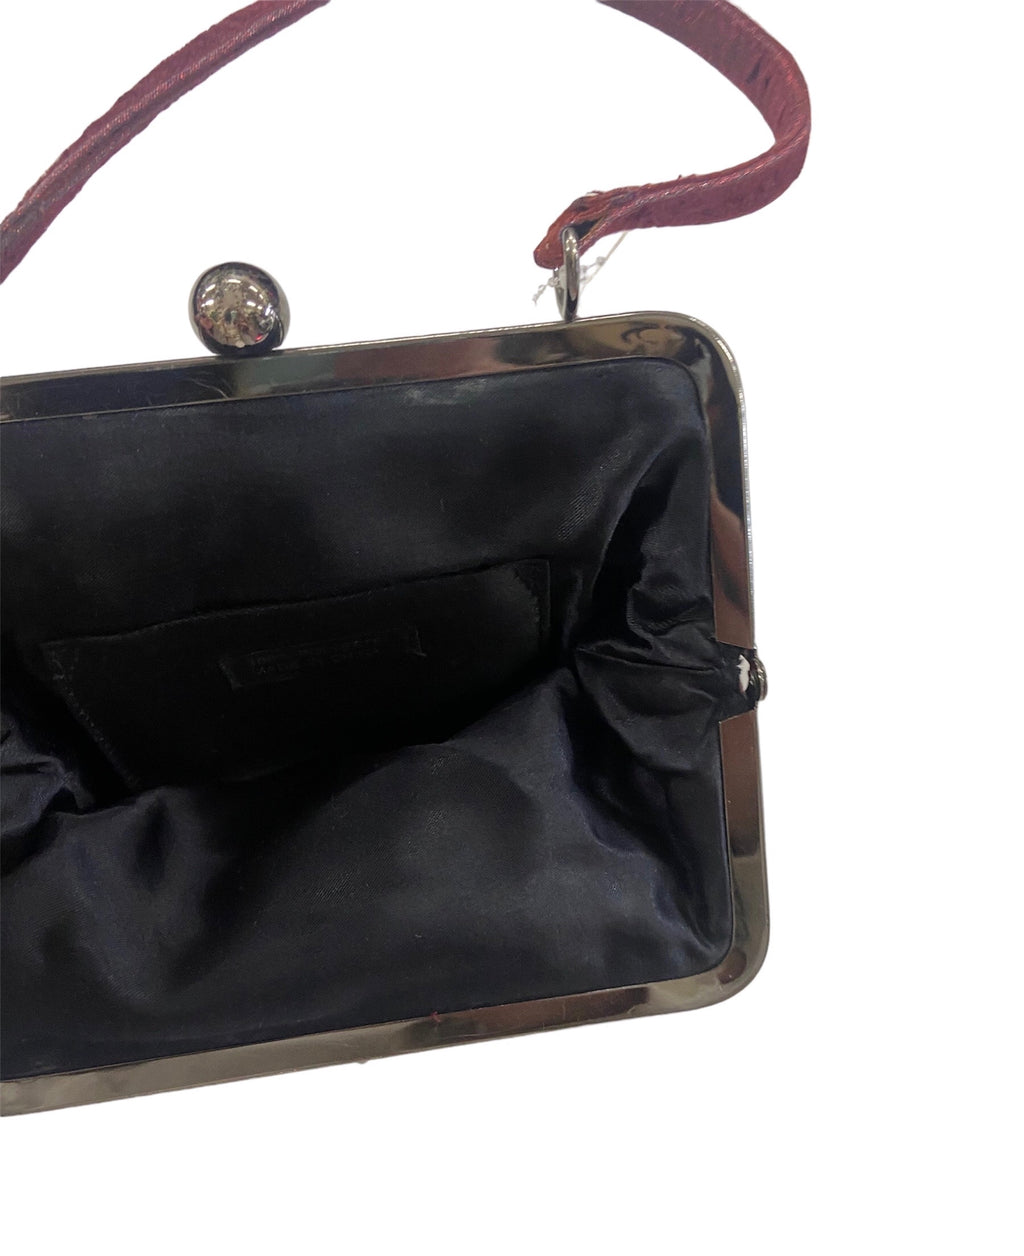 Vintage Velvet Burgundy Clutch Bag